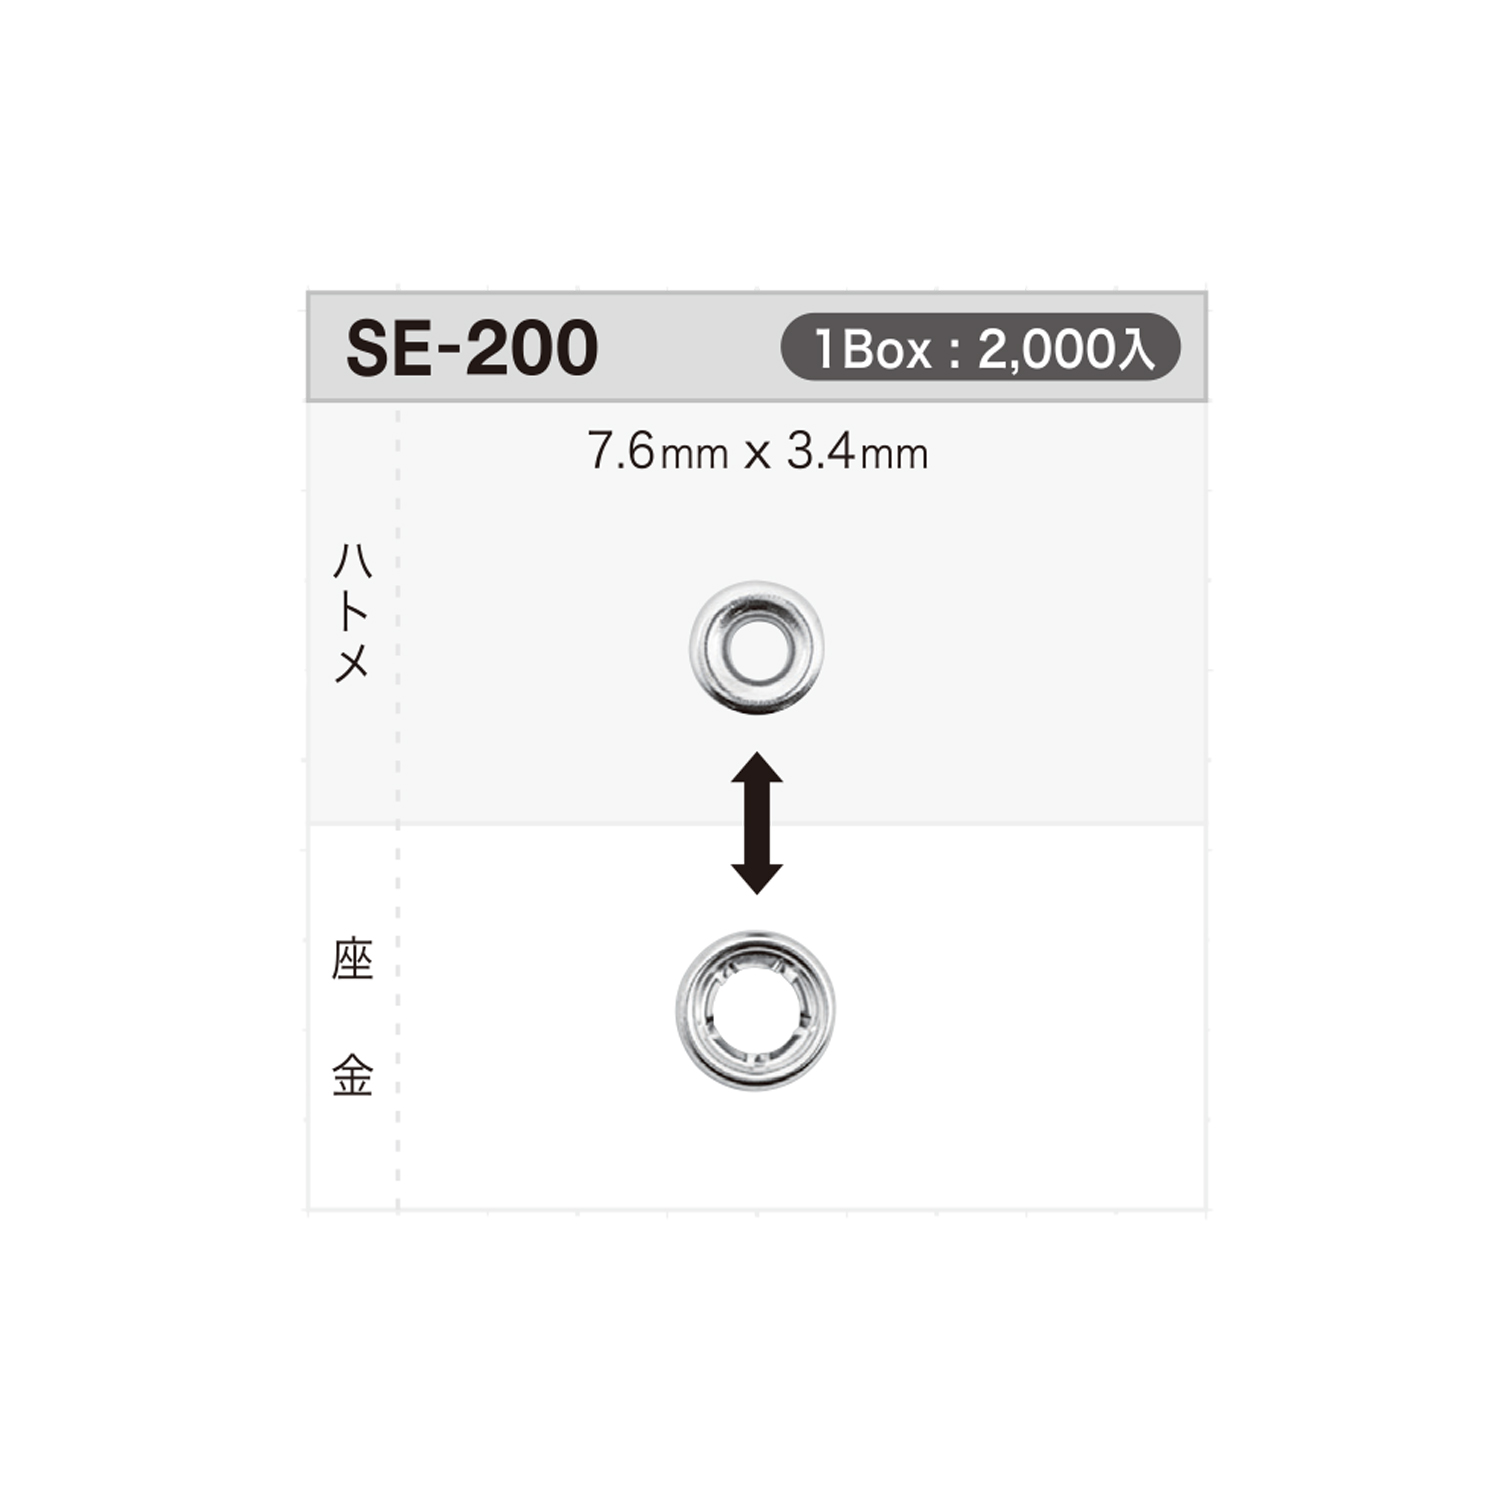 SE200 Ösenscheibe 7,6 Mm X 3,4 Mm * Kompatibel Mit Nadeldetektoren[Druckverschluss/Ösenscheibe] Morito